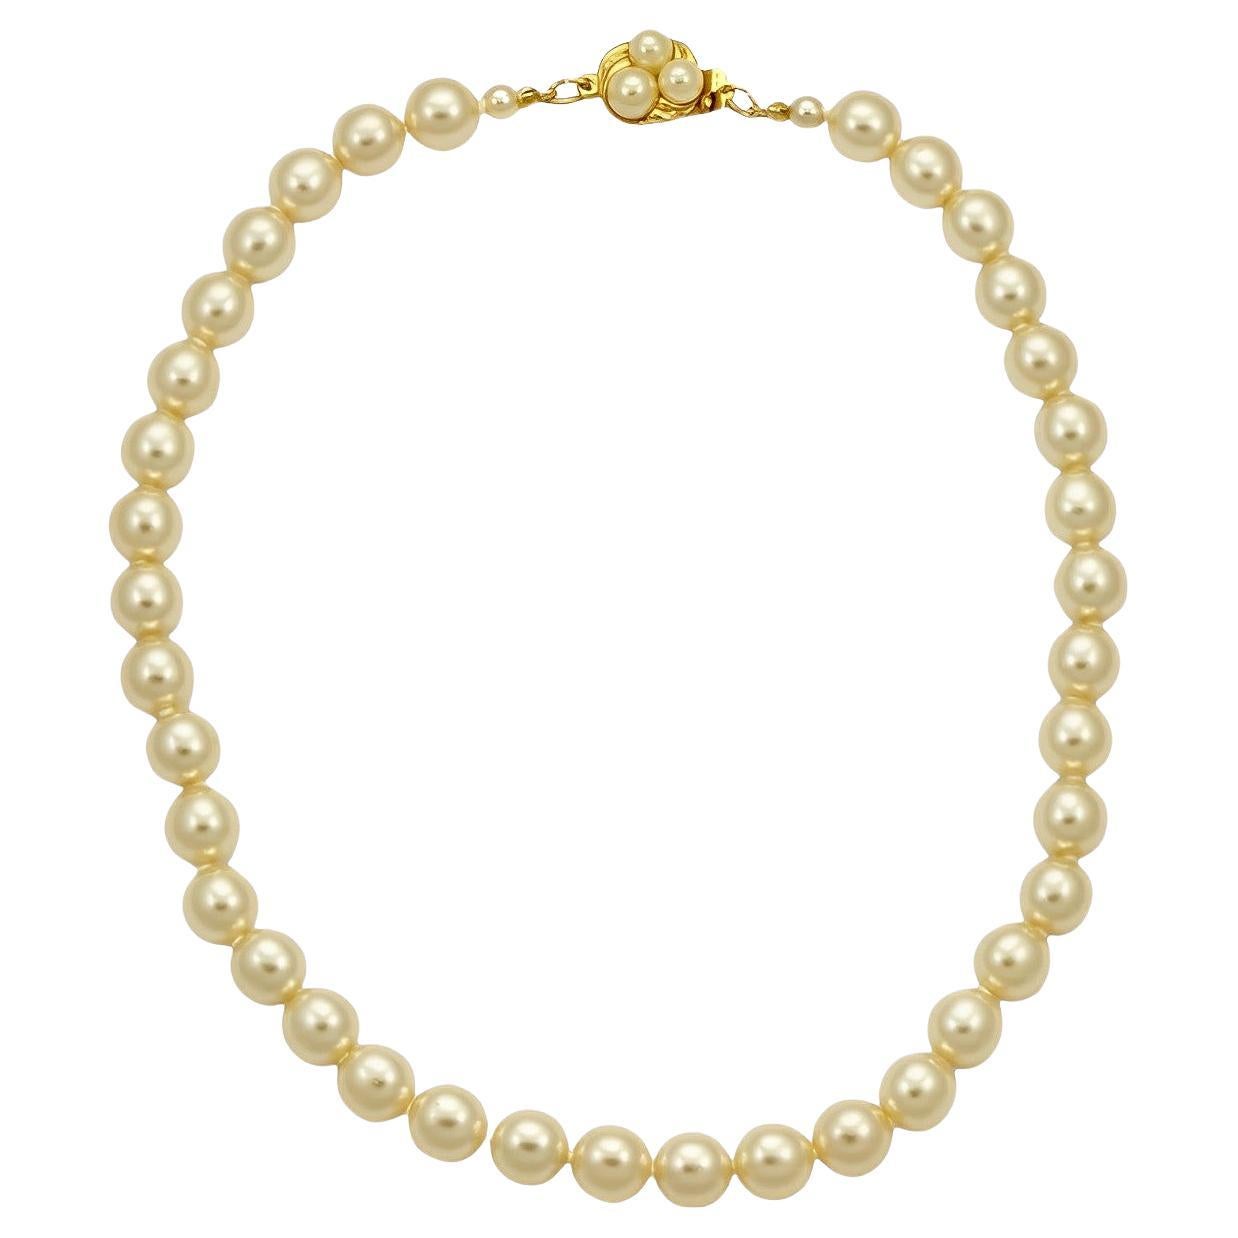 Collier de perles en verre crème avec fermoir en plaqué or et perles